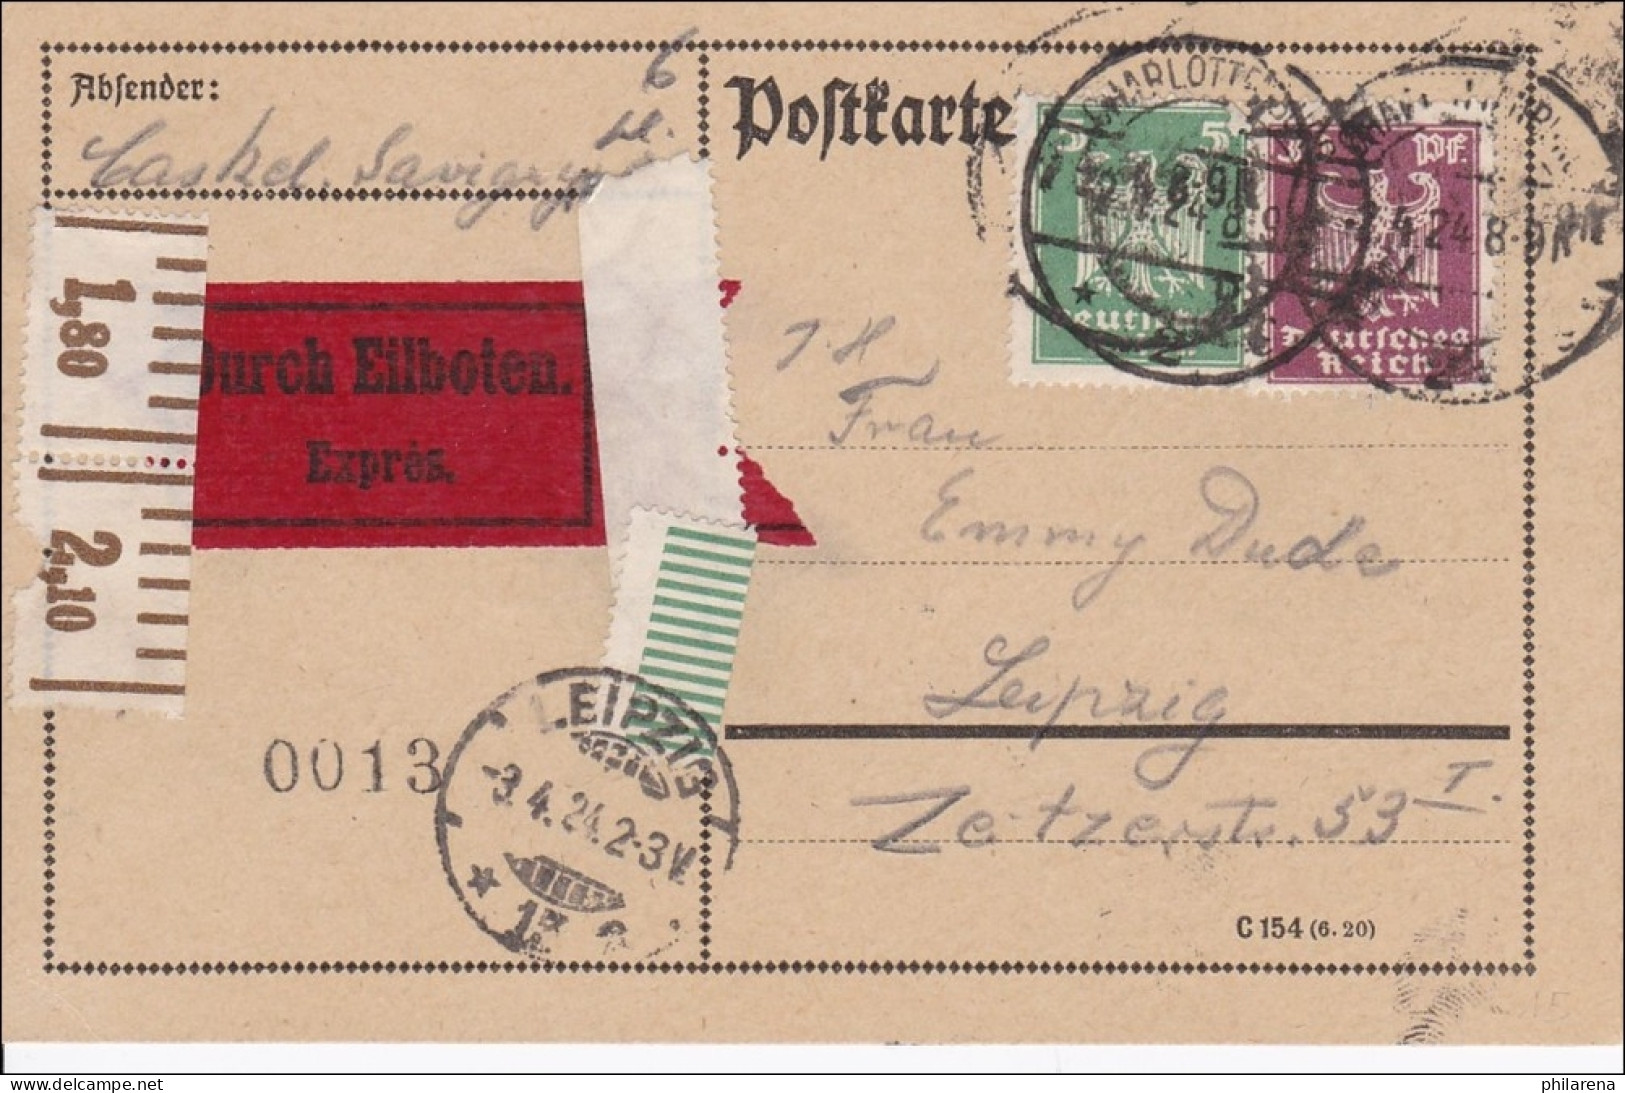 Weimar:  Postkarte Als Eilboten Von Leipzig 1924 - Covers & Documents